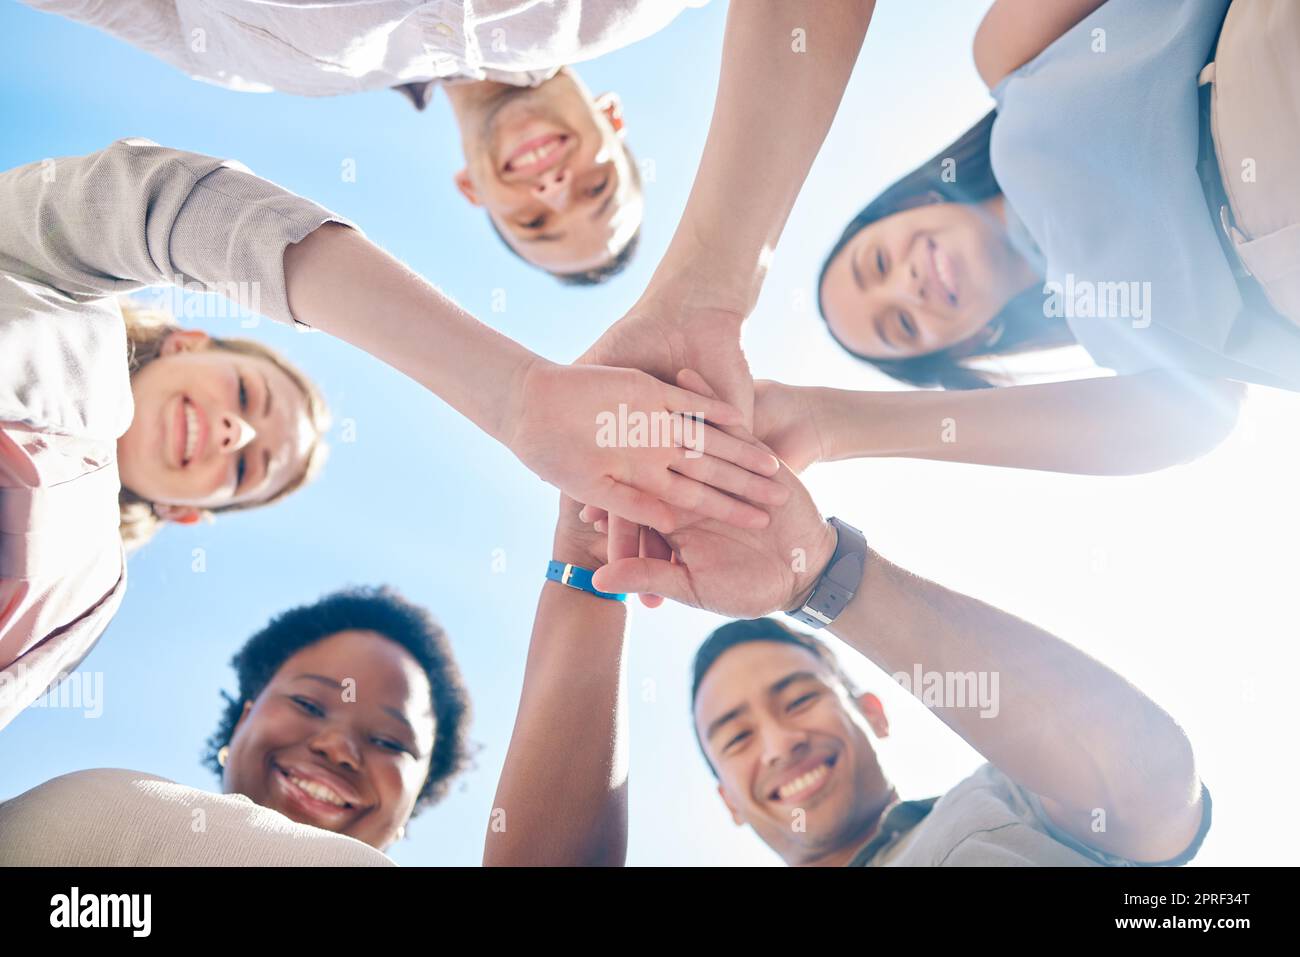 Eine Gruppe von Freunden, die von unten erfolgreich und vereint sind, um Teamwork, Zusammenarbeit und Verbindungen im Freien zu ermöglichen. Ein vielseitiges Team, das Unterstützung, Zusammengehörigkeit und Gemeinschaft zeigt, vereint für ein gemeinsames Ziel. Stockfoto